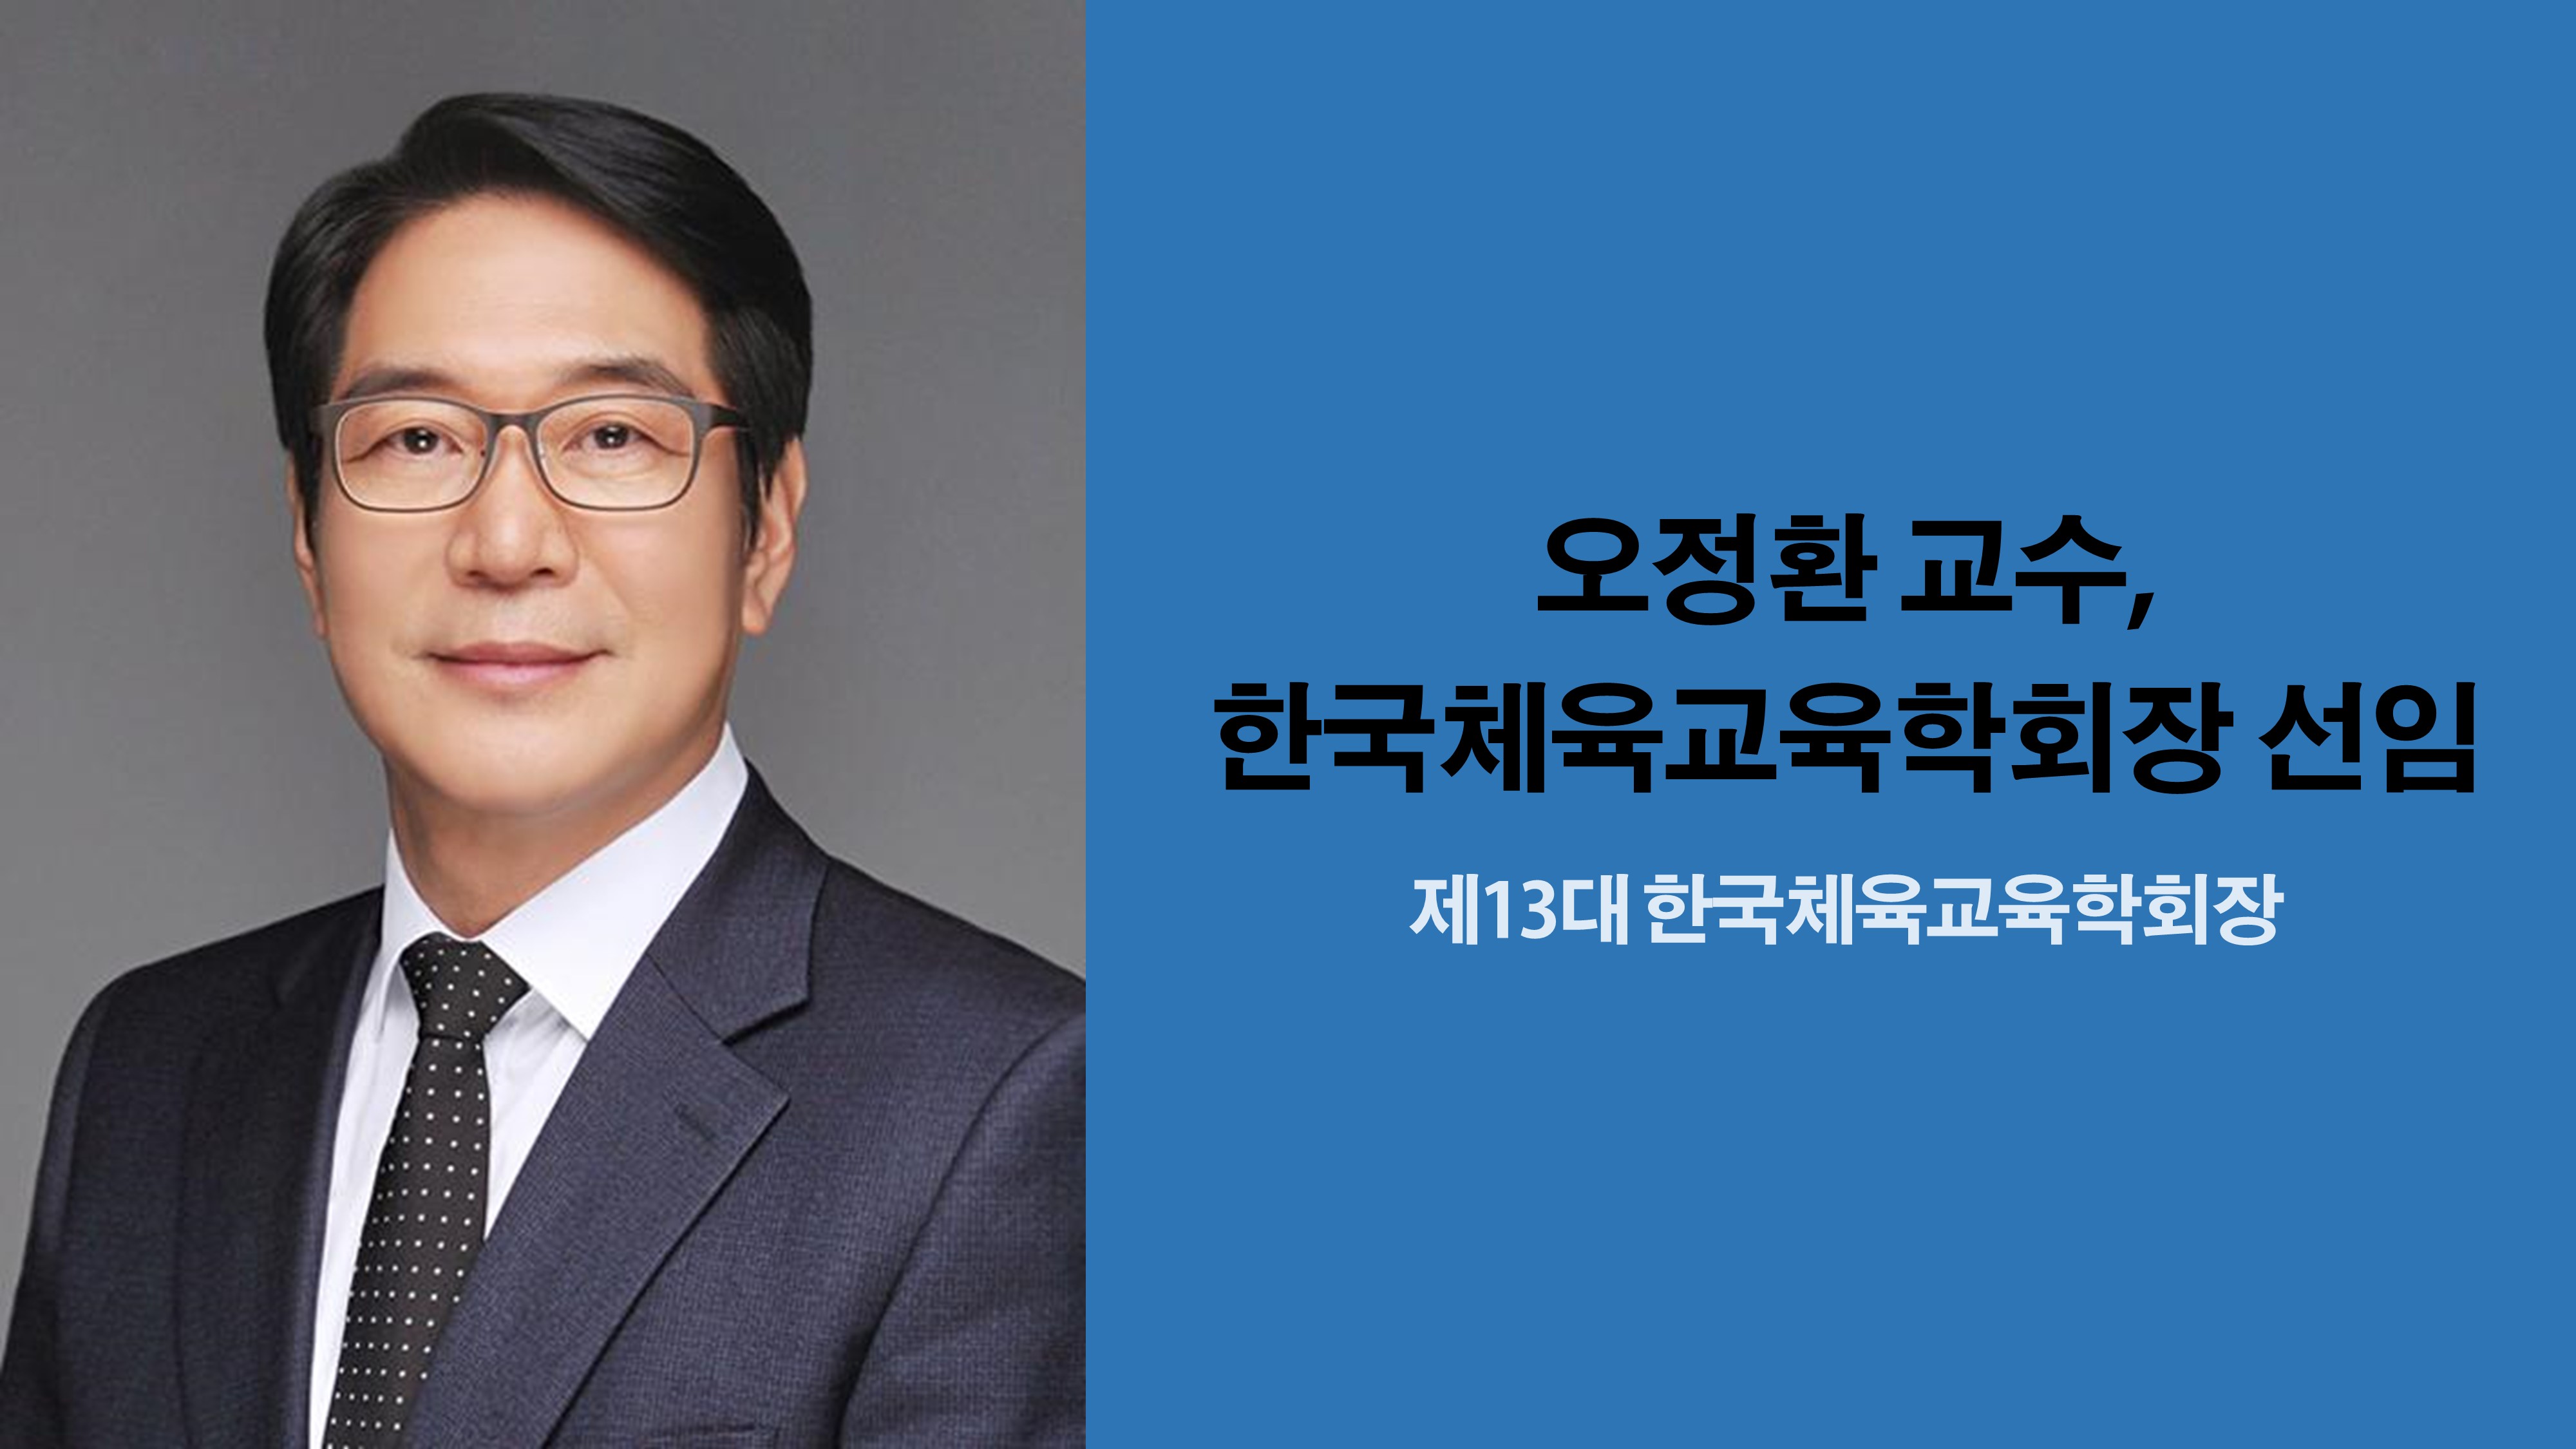 체육교육과 오정환 교수, 한국체육교육학회장 선임 사진1